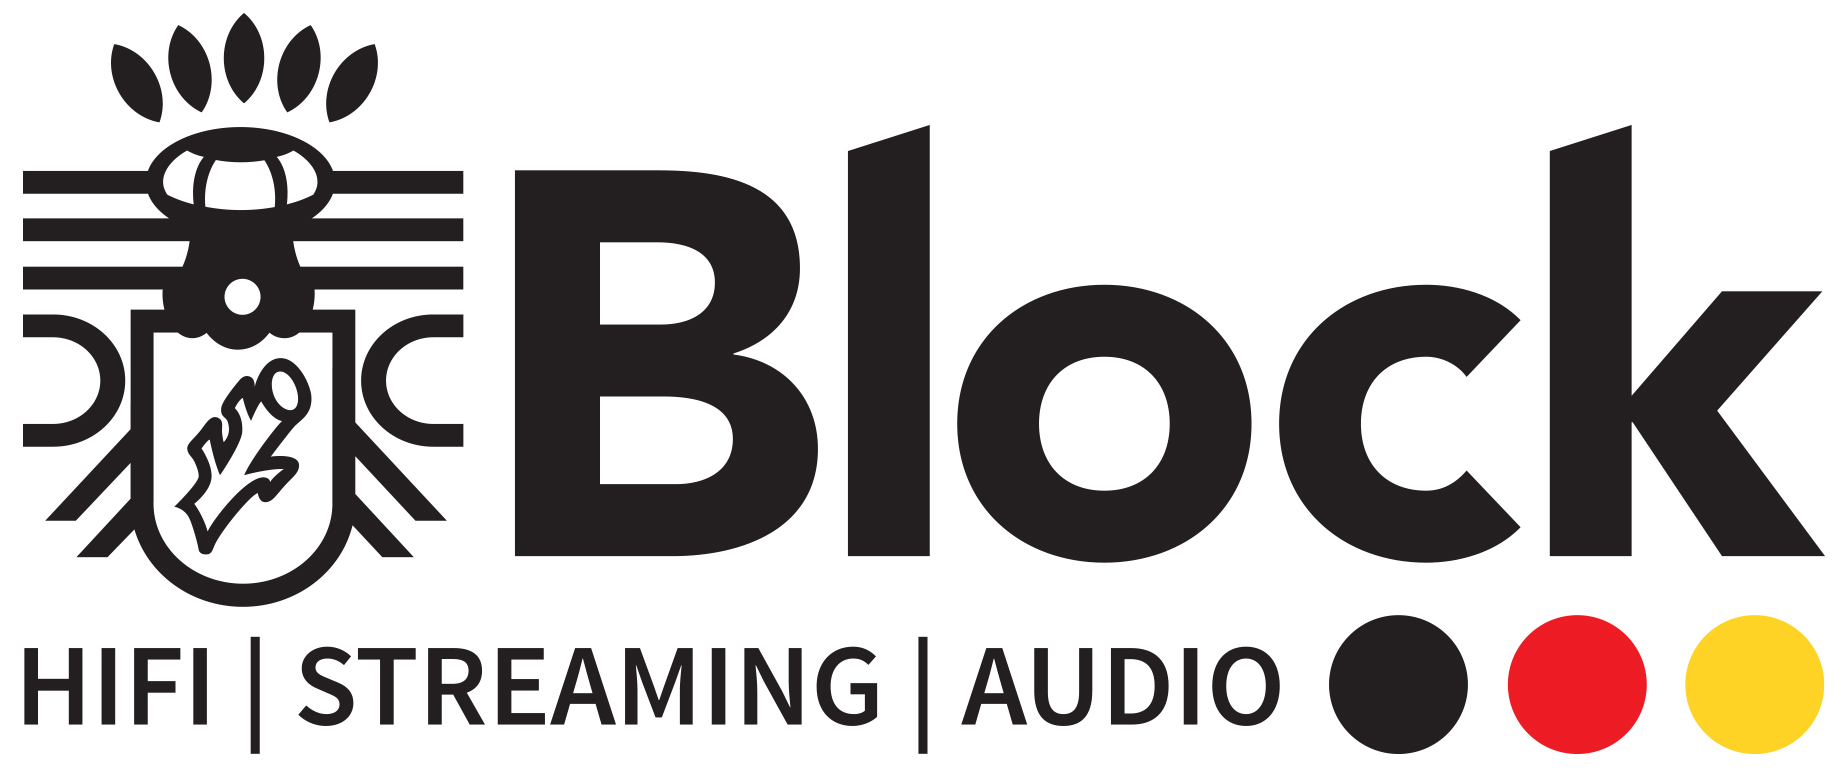 Block Audioblock